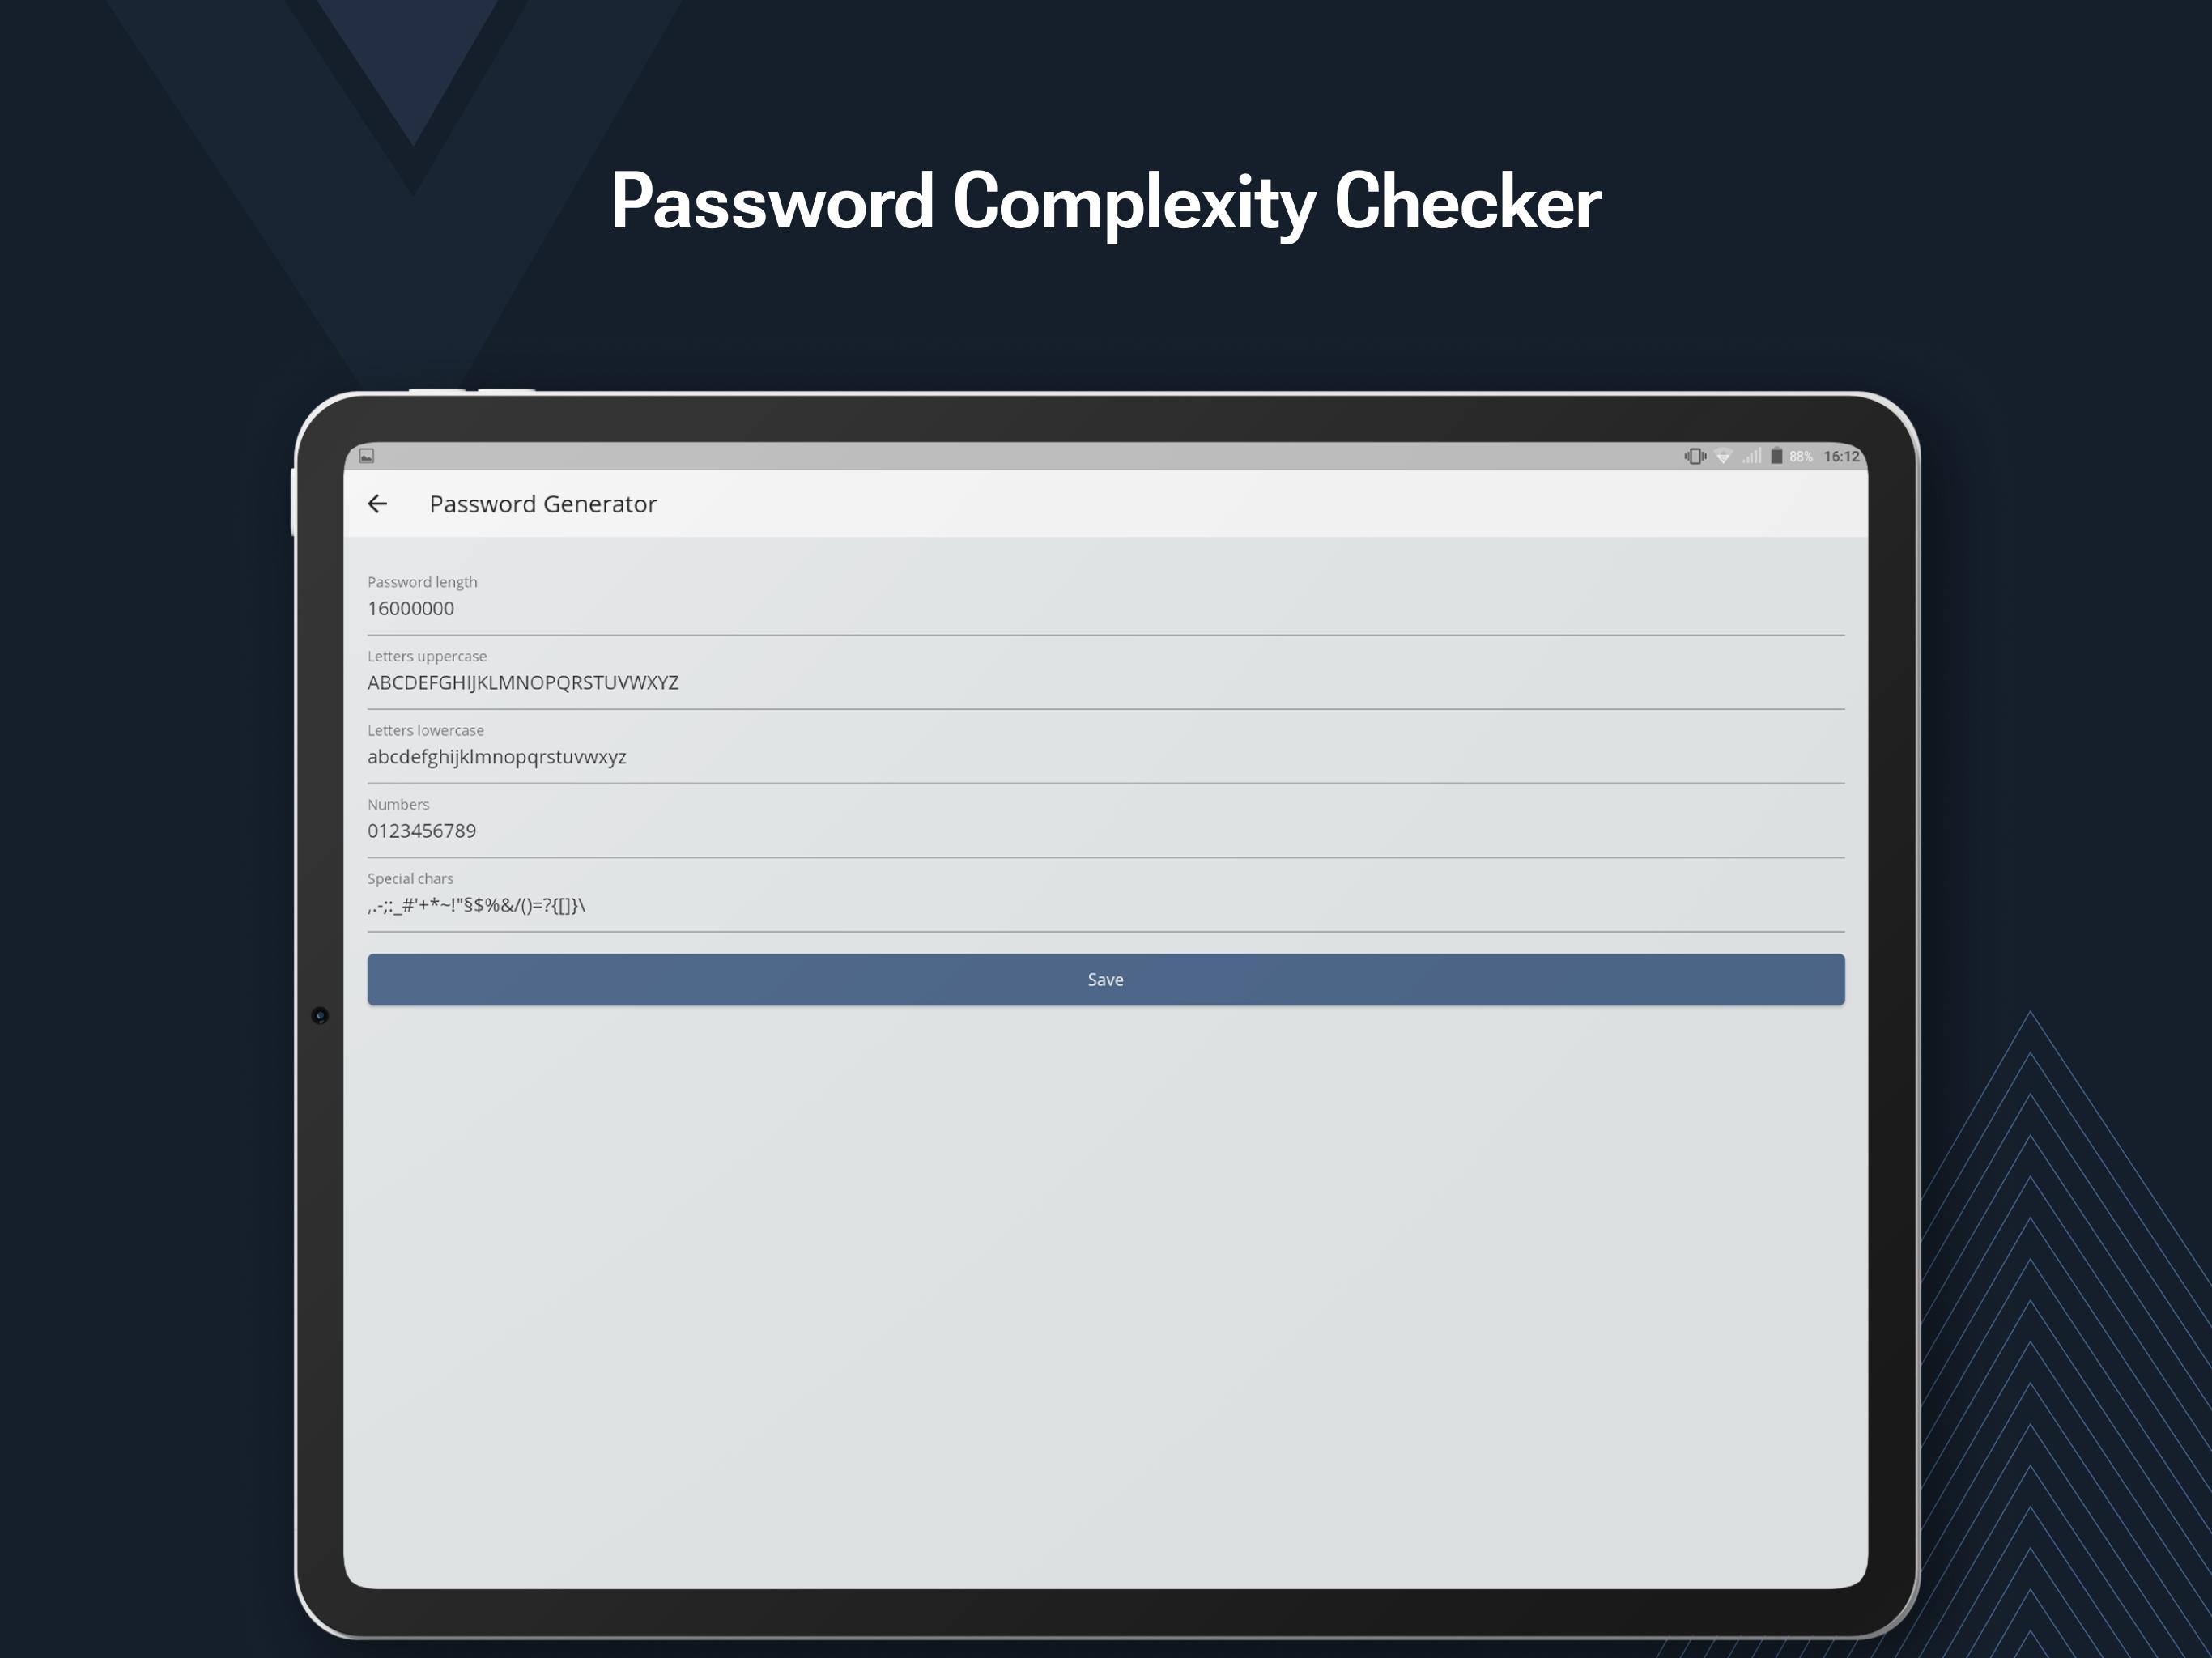 Control password